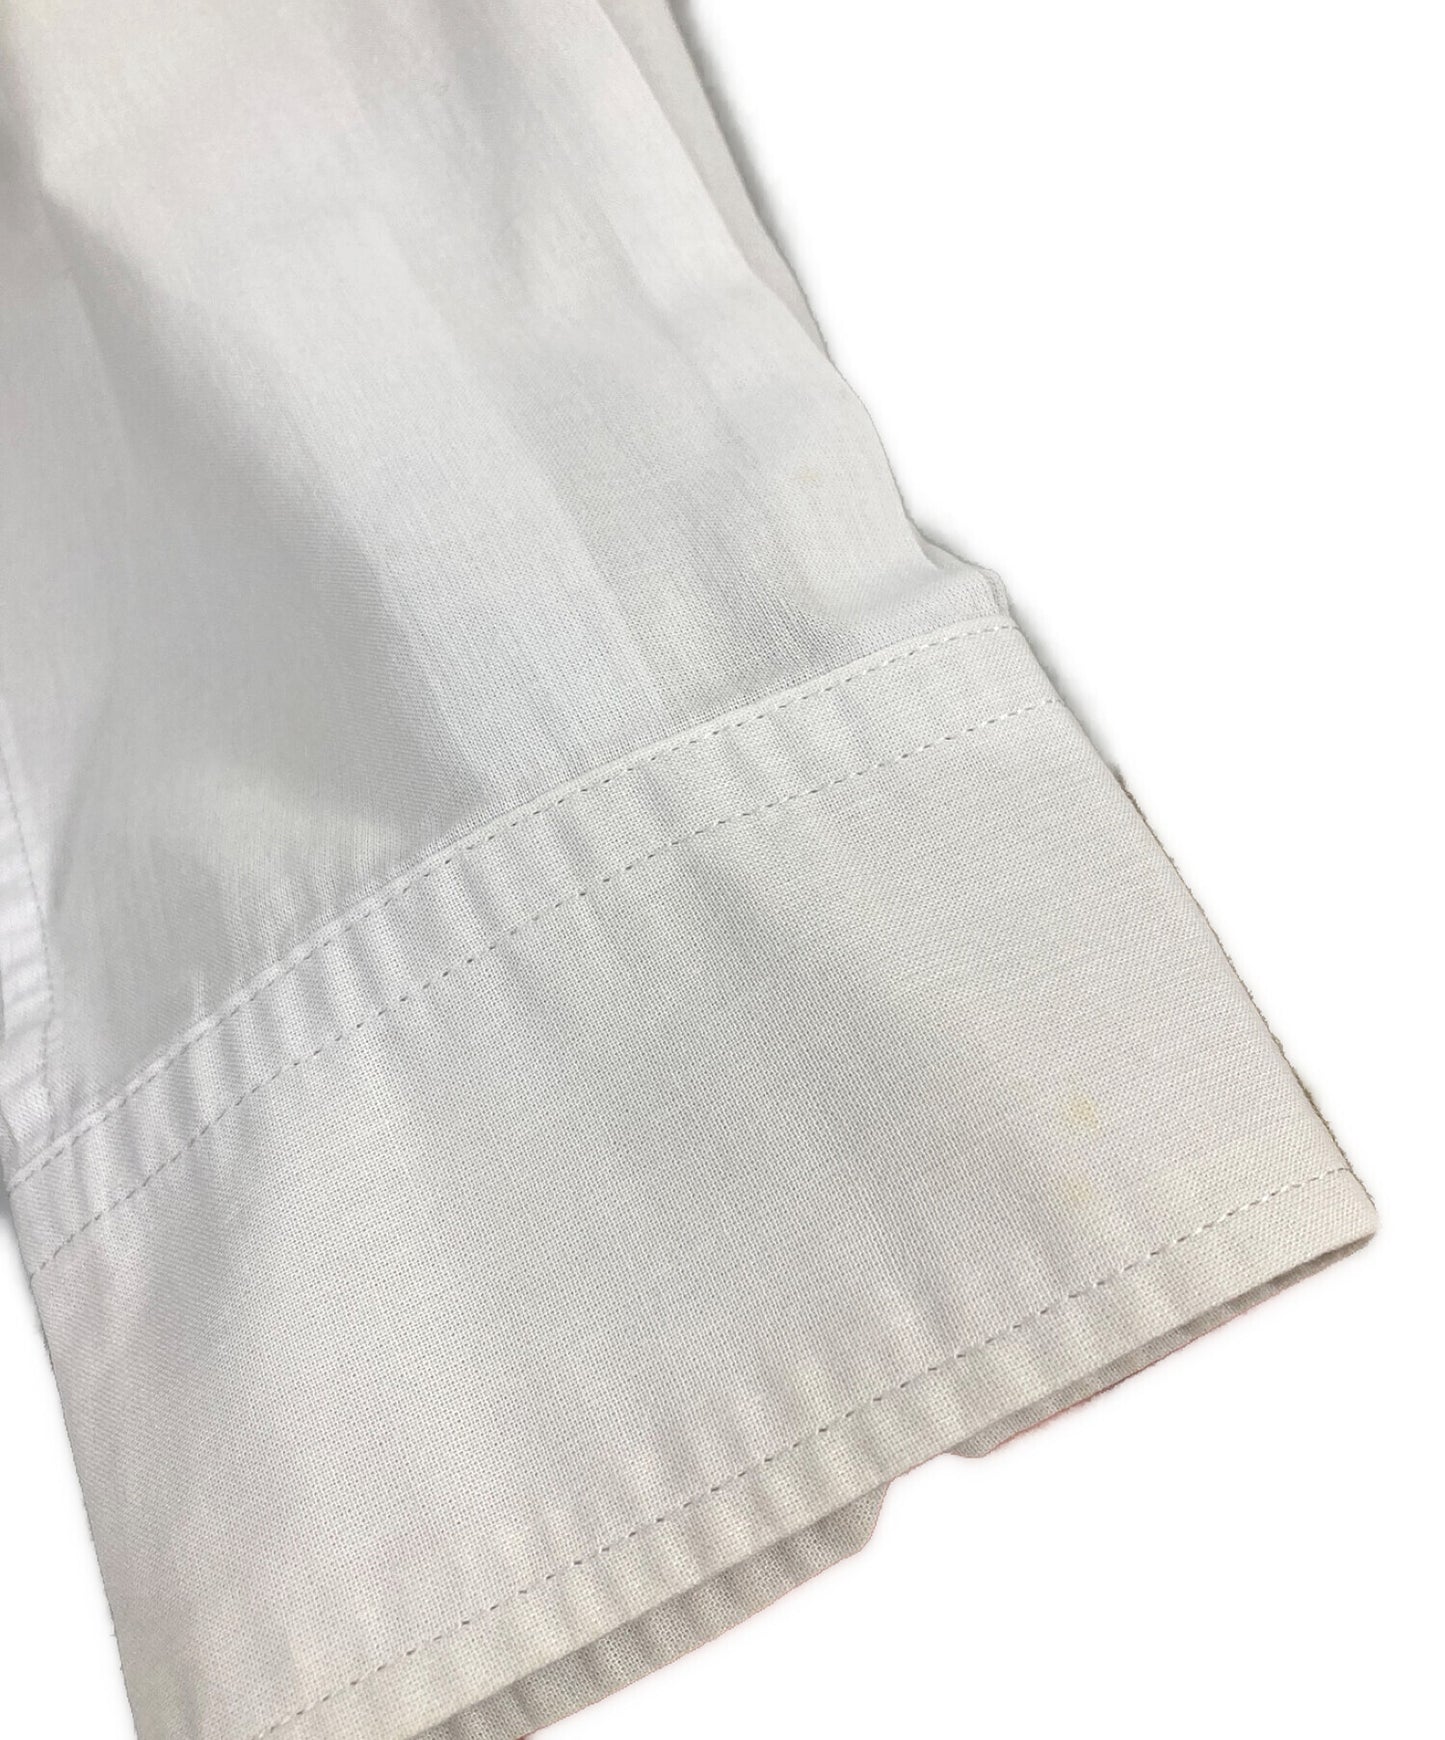 [Pre-owned] Yohji Yamamoto pour homme 13SS Cutaway asymmetrical button-down shirt/long-sleeved shirt HX-B21-044